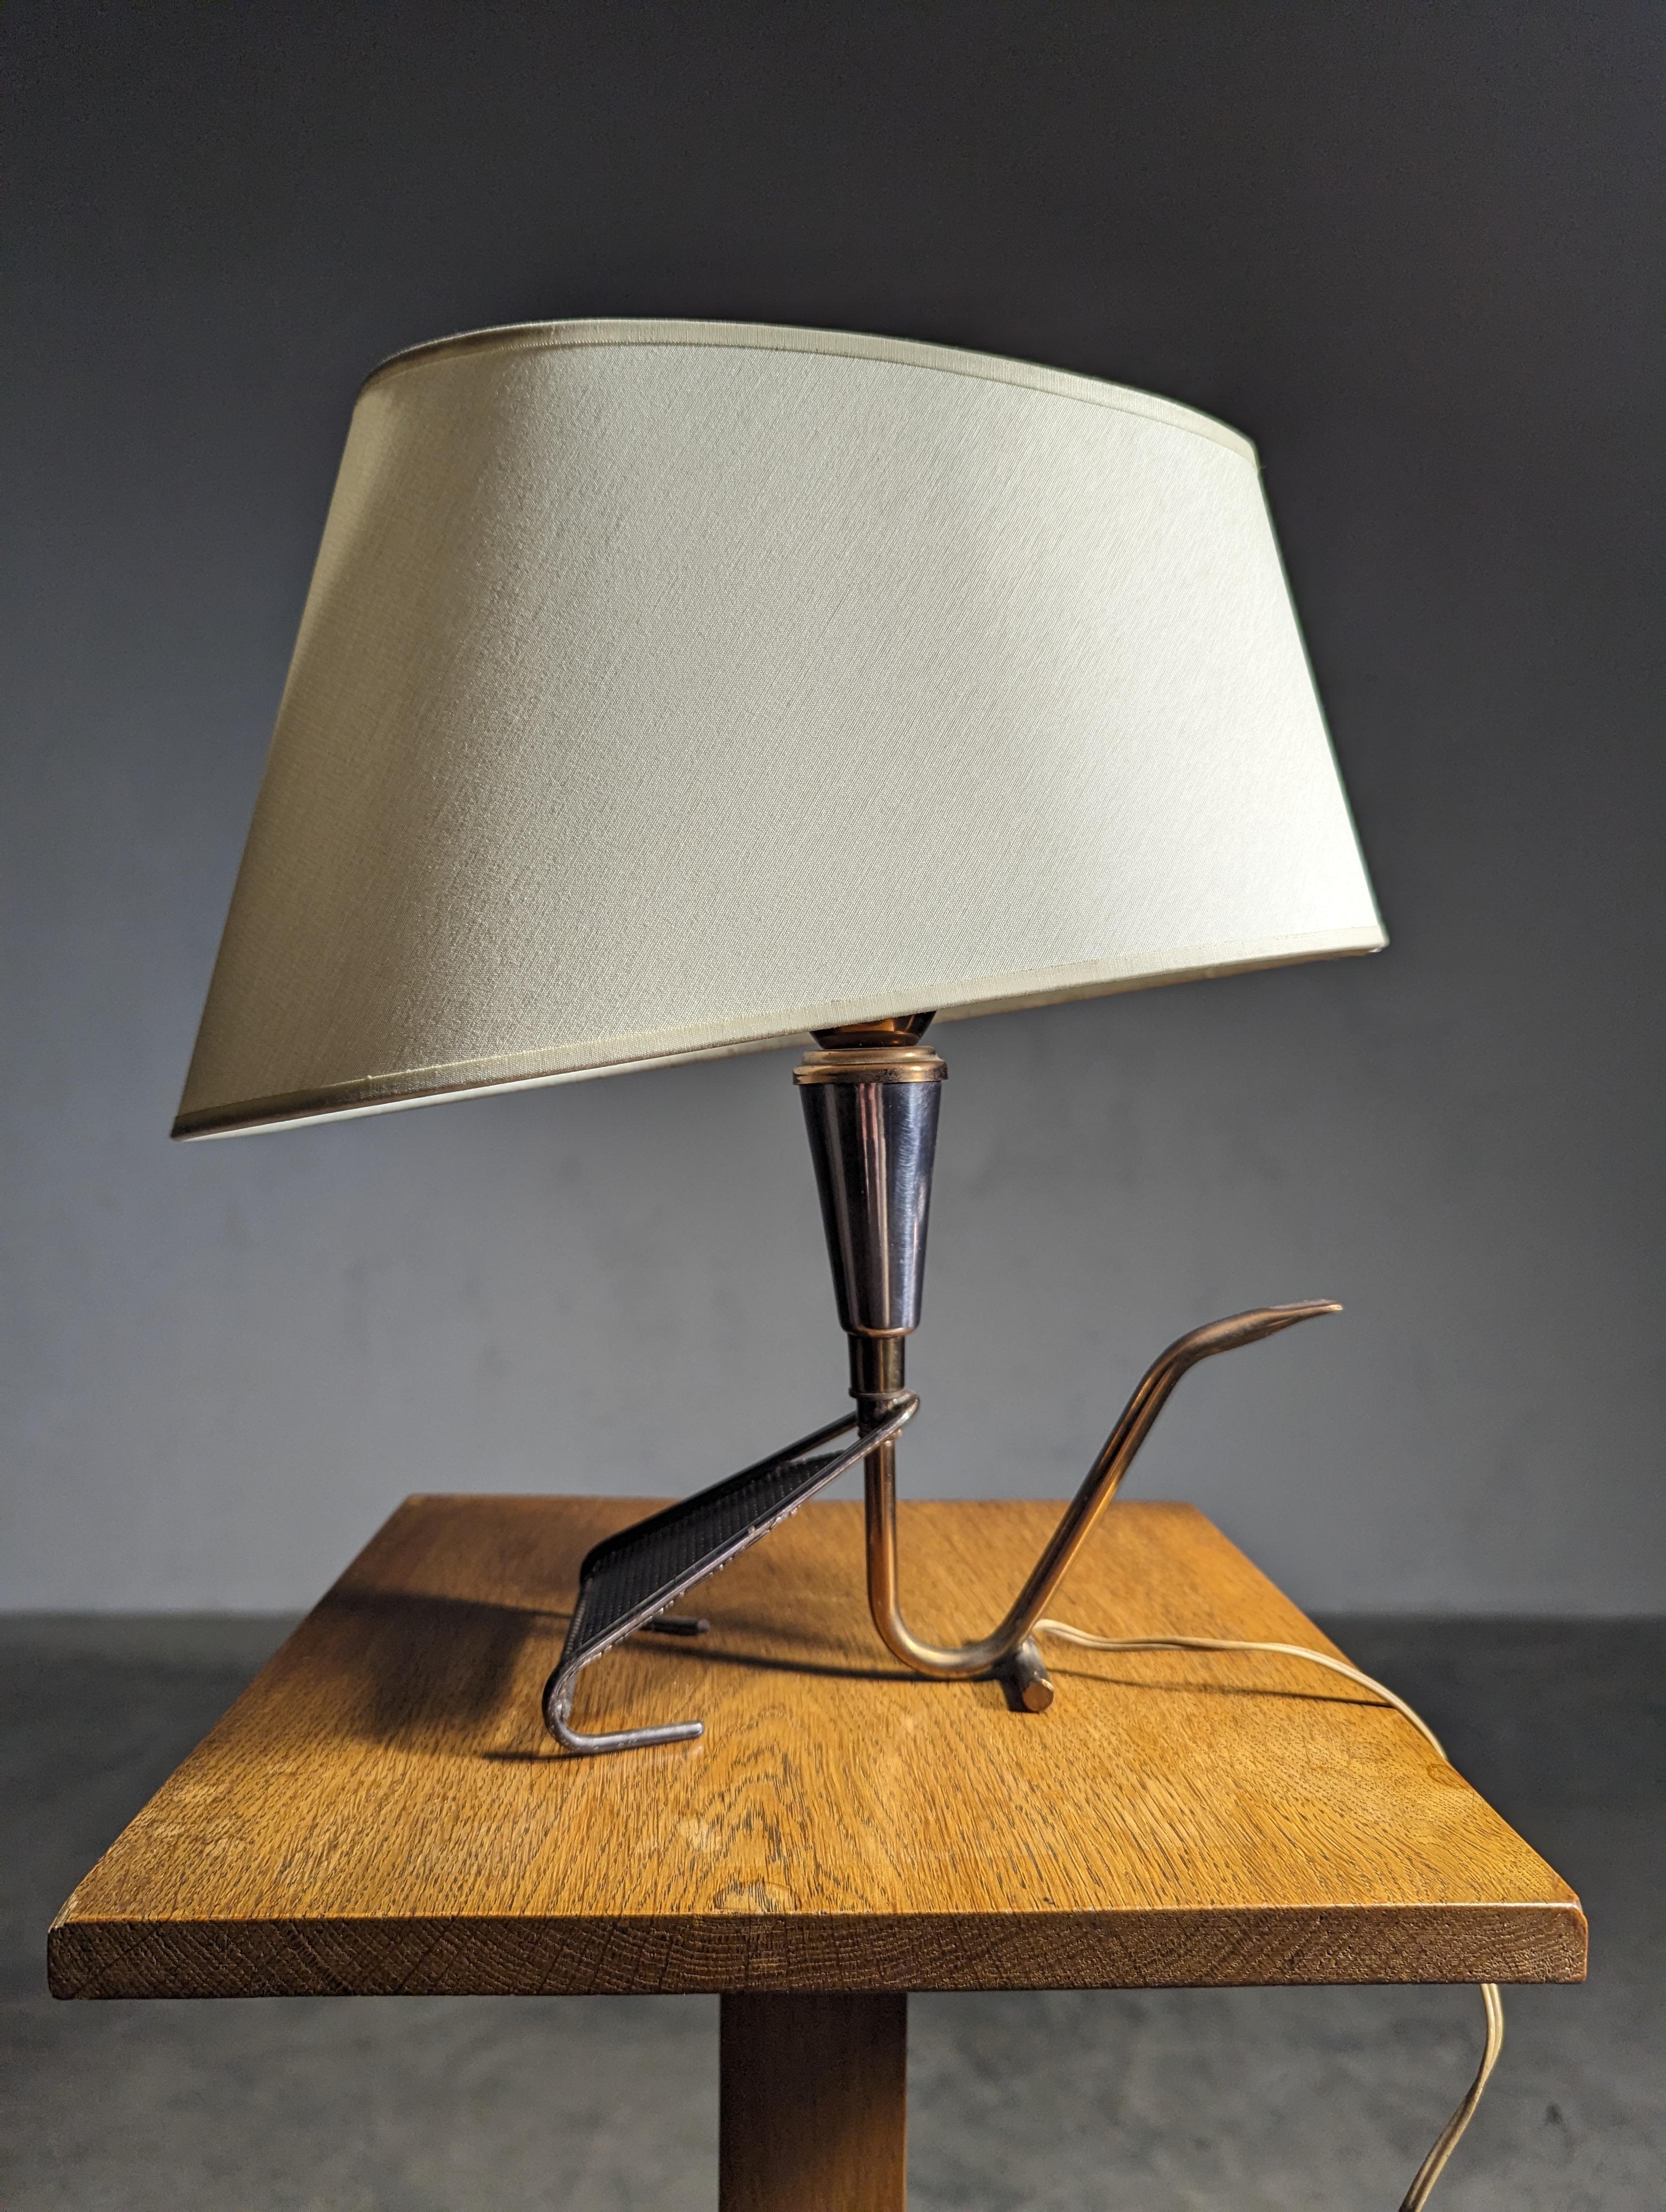 Lampe de table française en laiton des années 50 par la Maison Arlus avec abat-jour.
En laiton et pièces métalliques patinées 